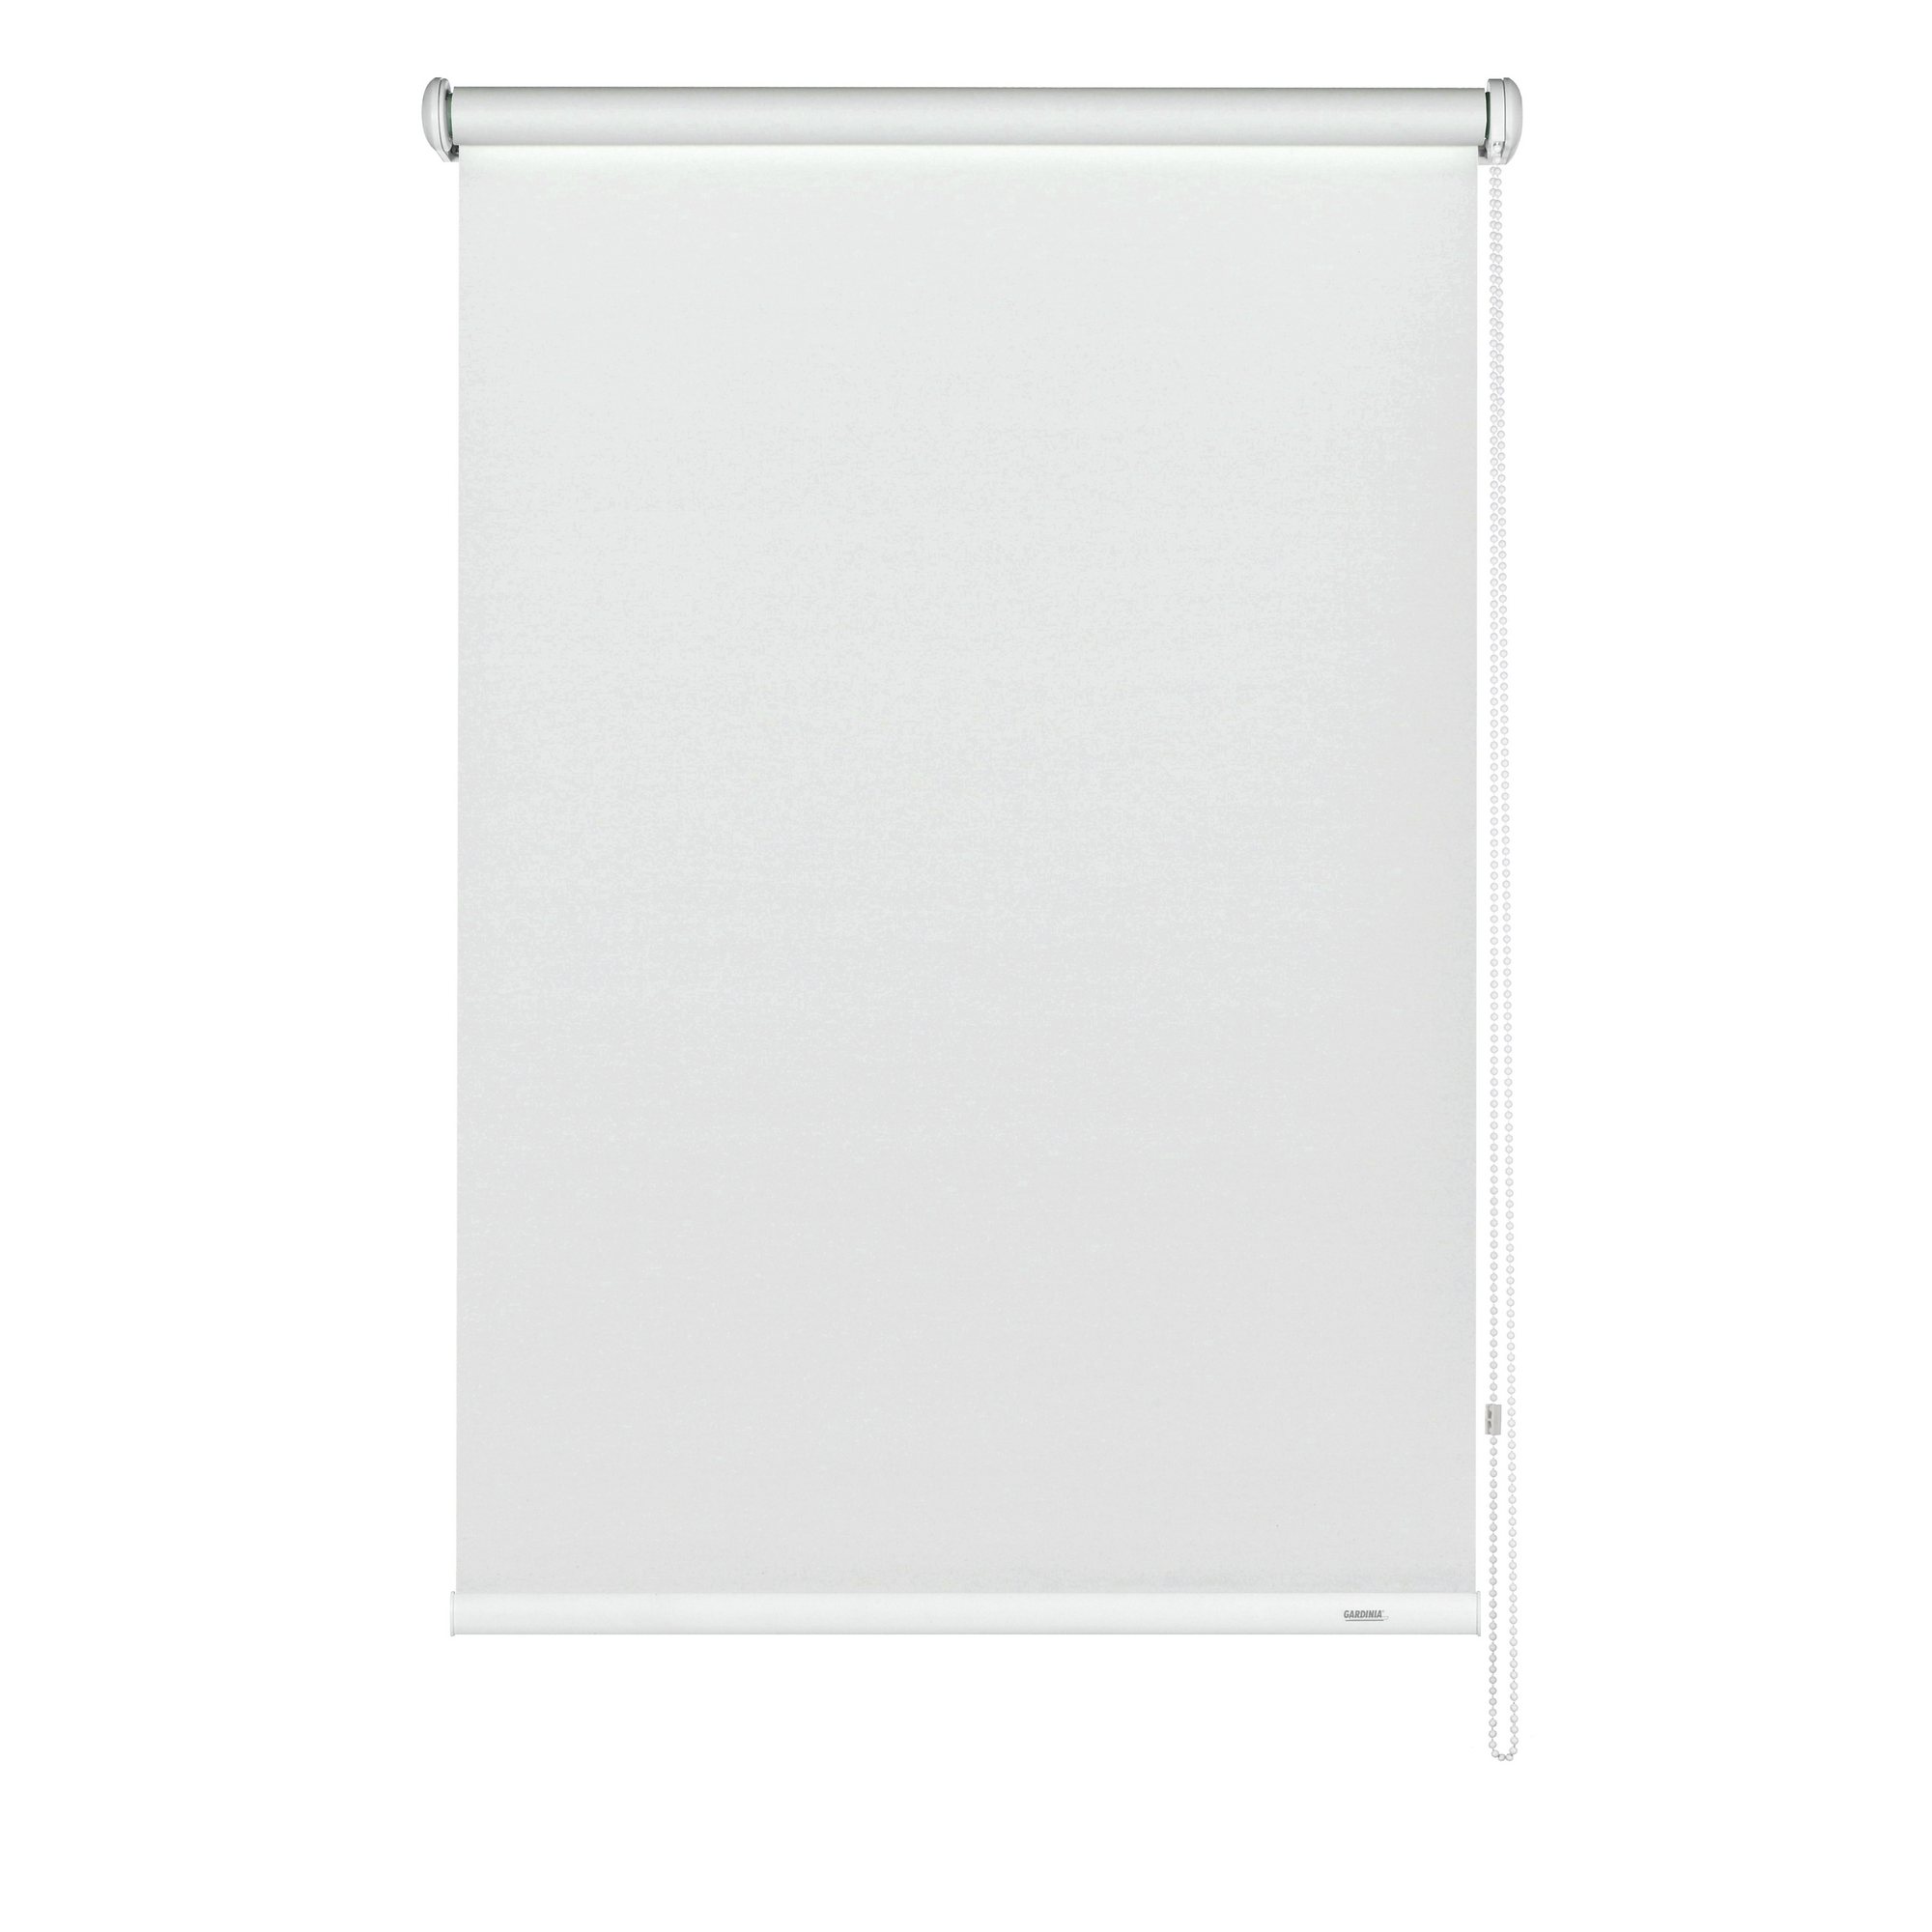 Seitenzug-Rollo 'Abdunklung' weiß 182 x 180 cm + product picture